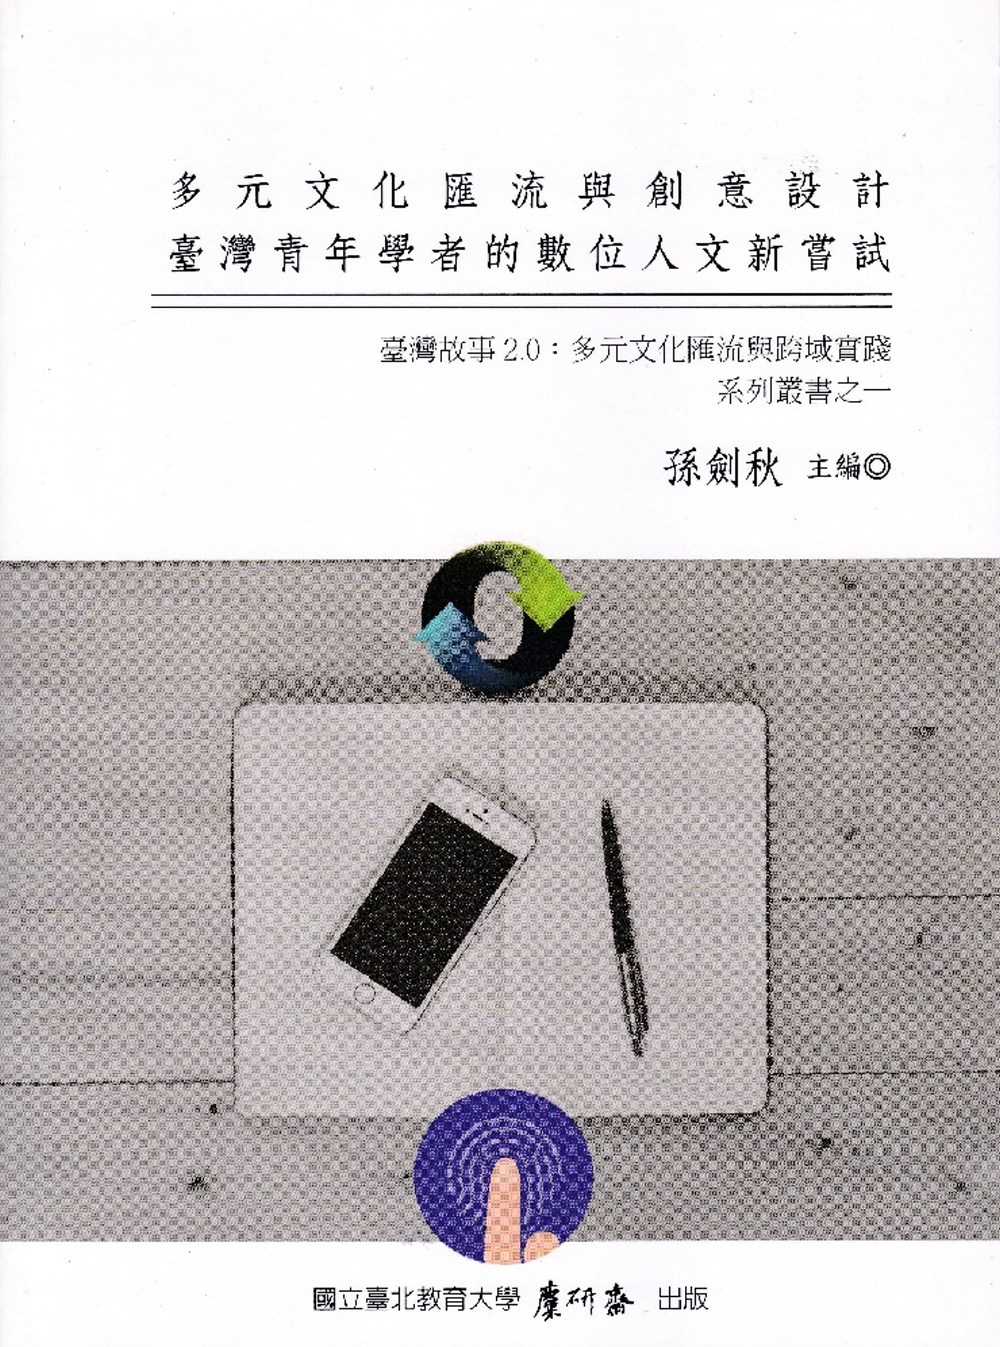 多元文化匯流與創意設計：臺灣故事2.0：多元文化匯流與跨域實踐系列叢書之一